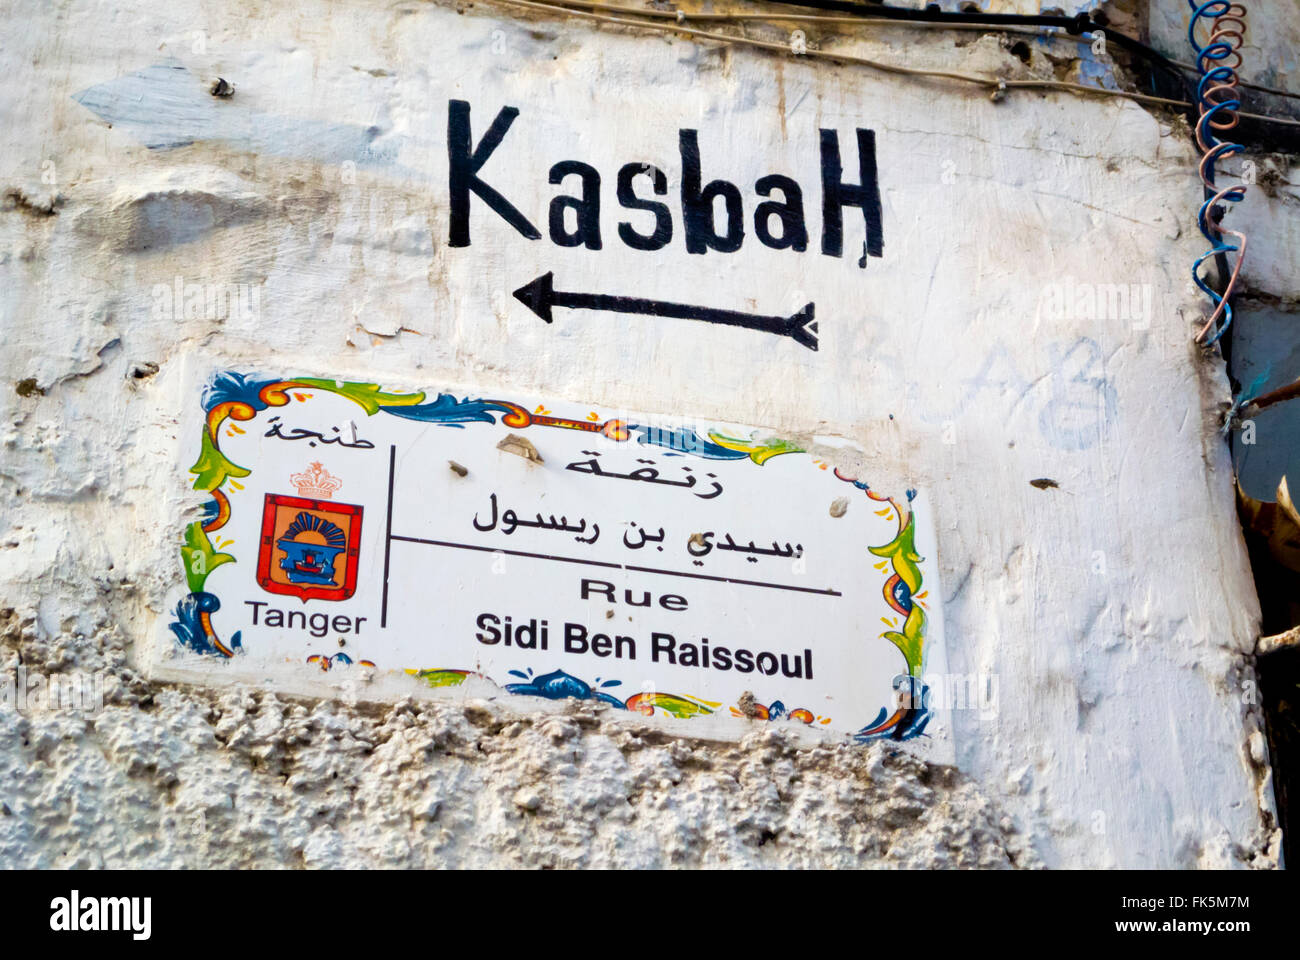 Plaque de rue et fléchage, Medina Kasbah, Tanger, nord du Maroc, l'Afrique du Nord Banque D'Images